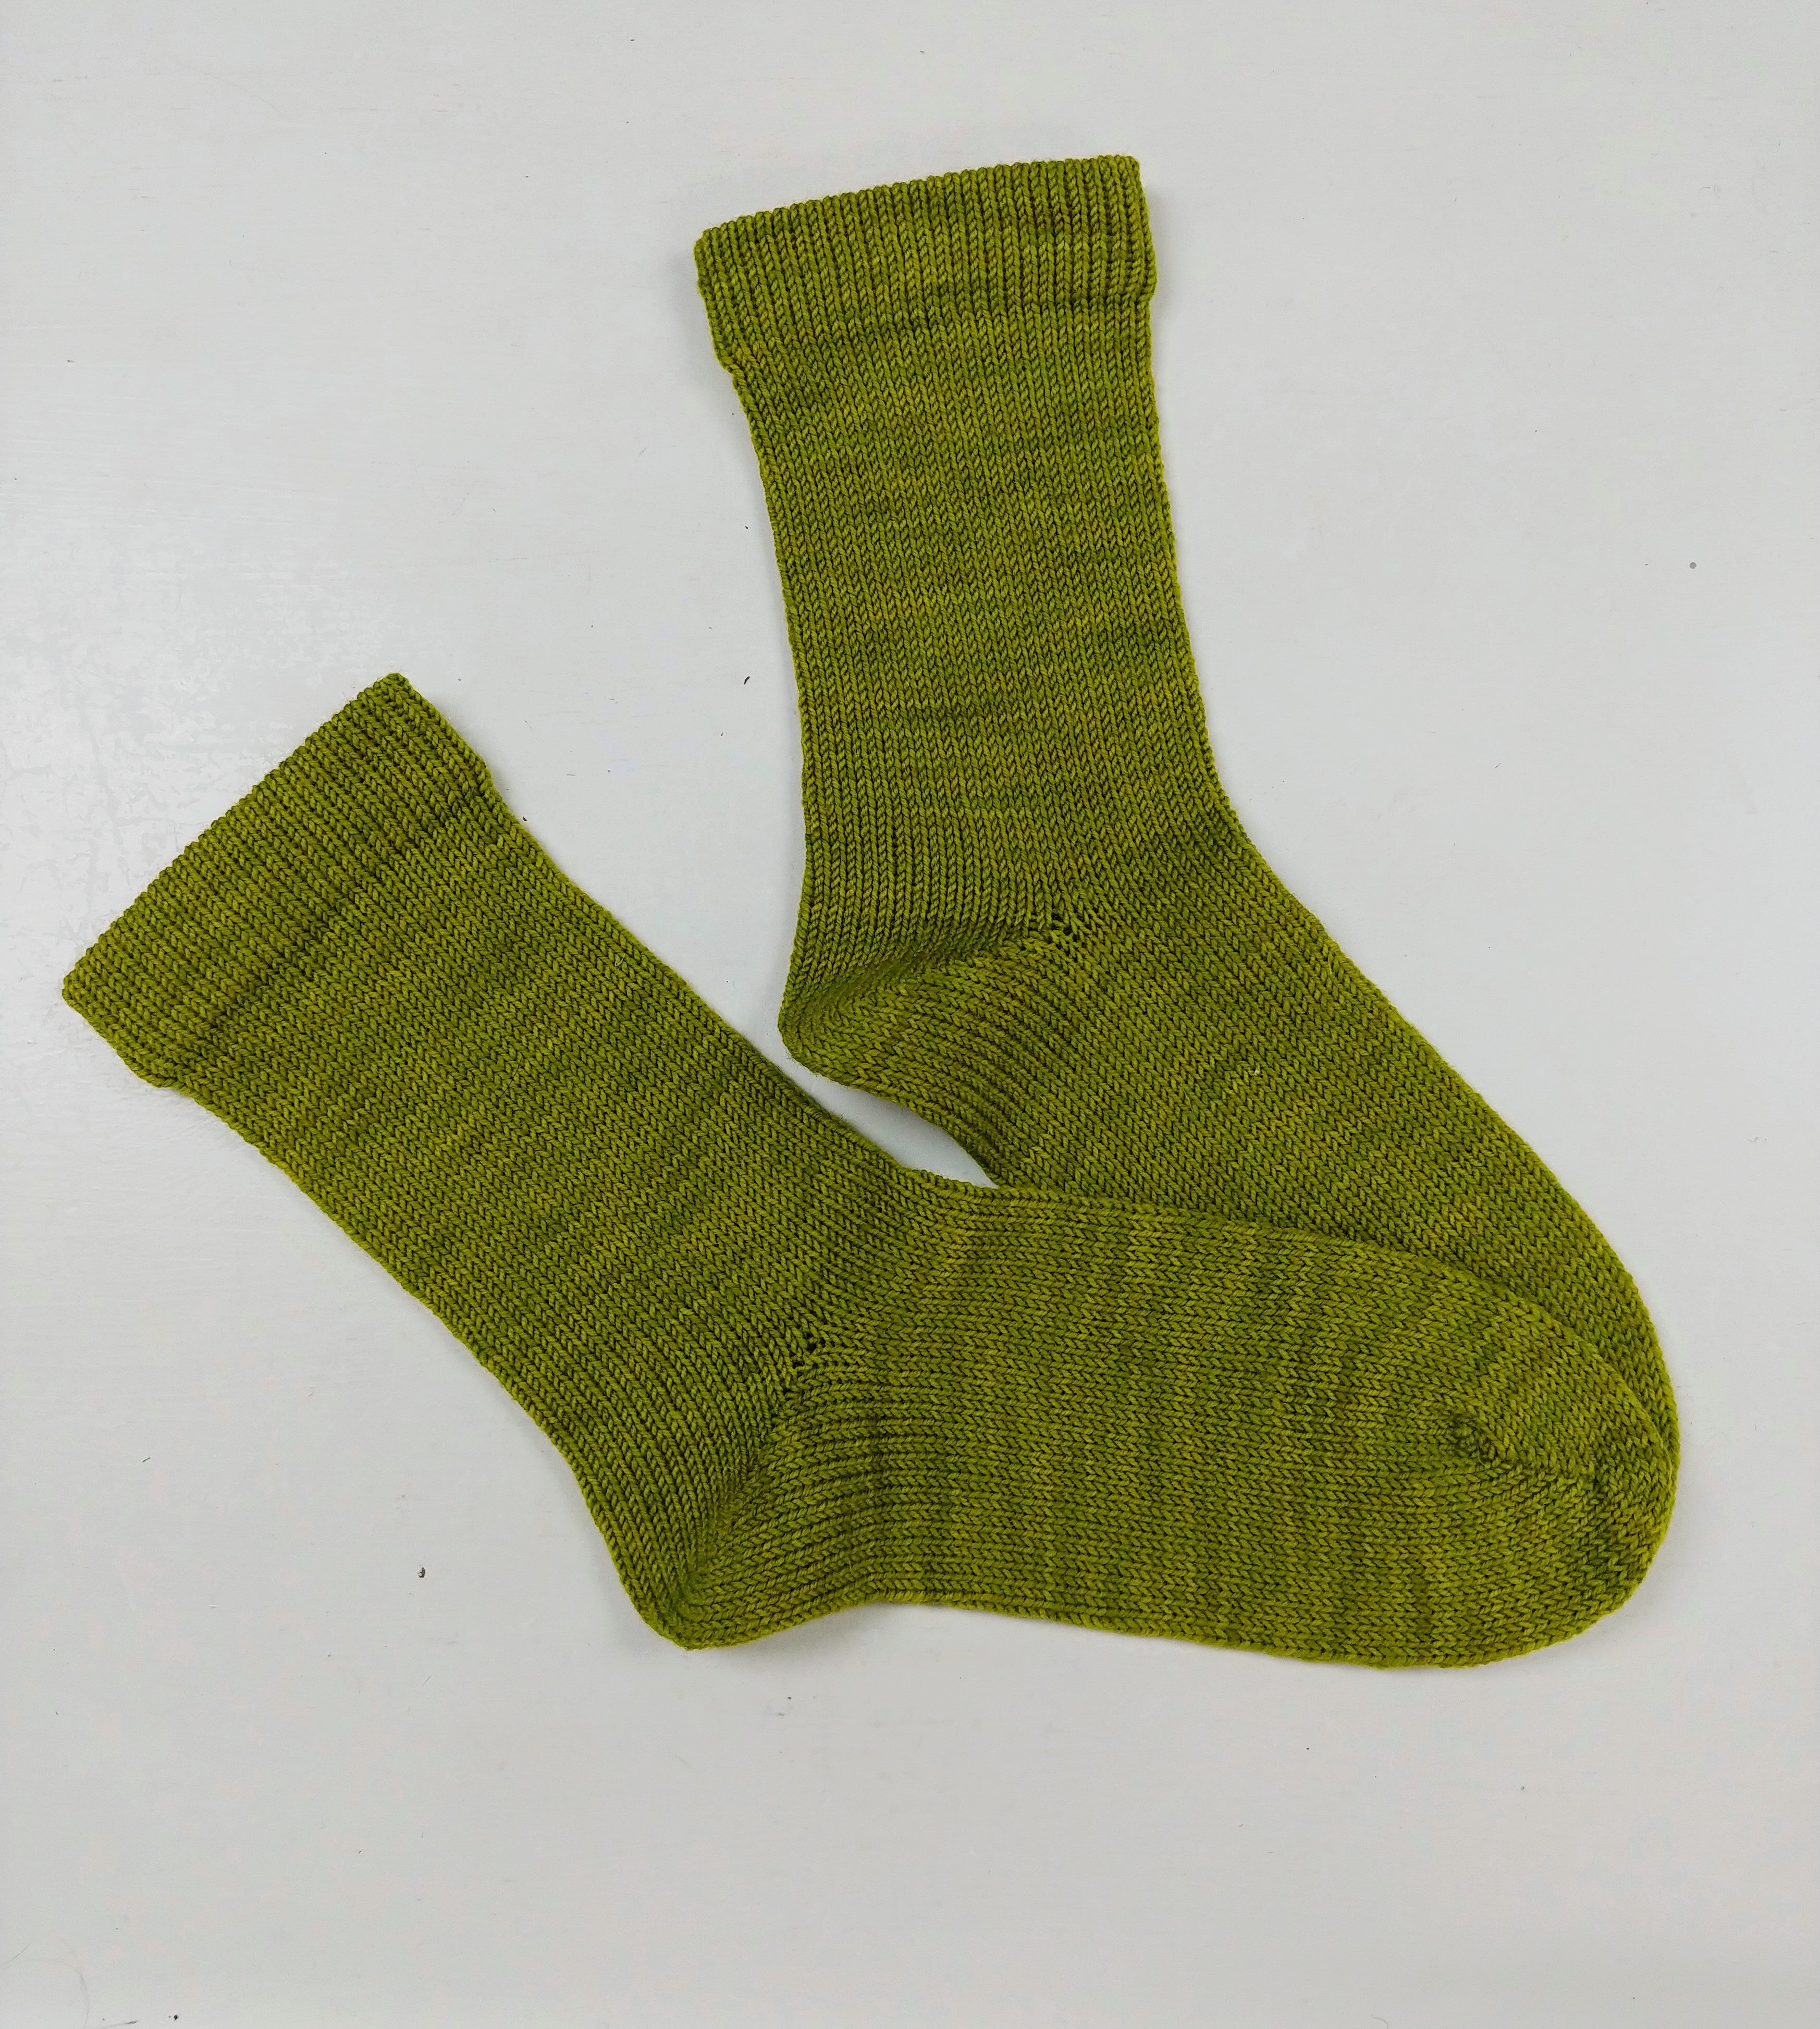 Socks for All